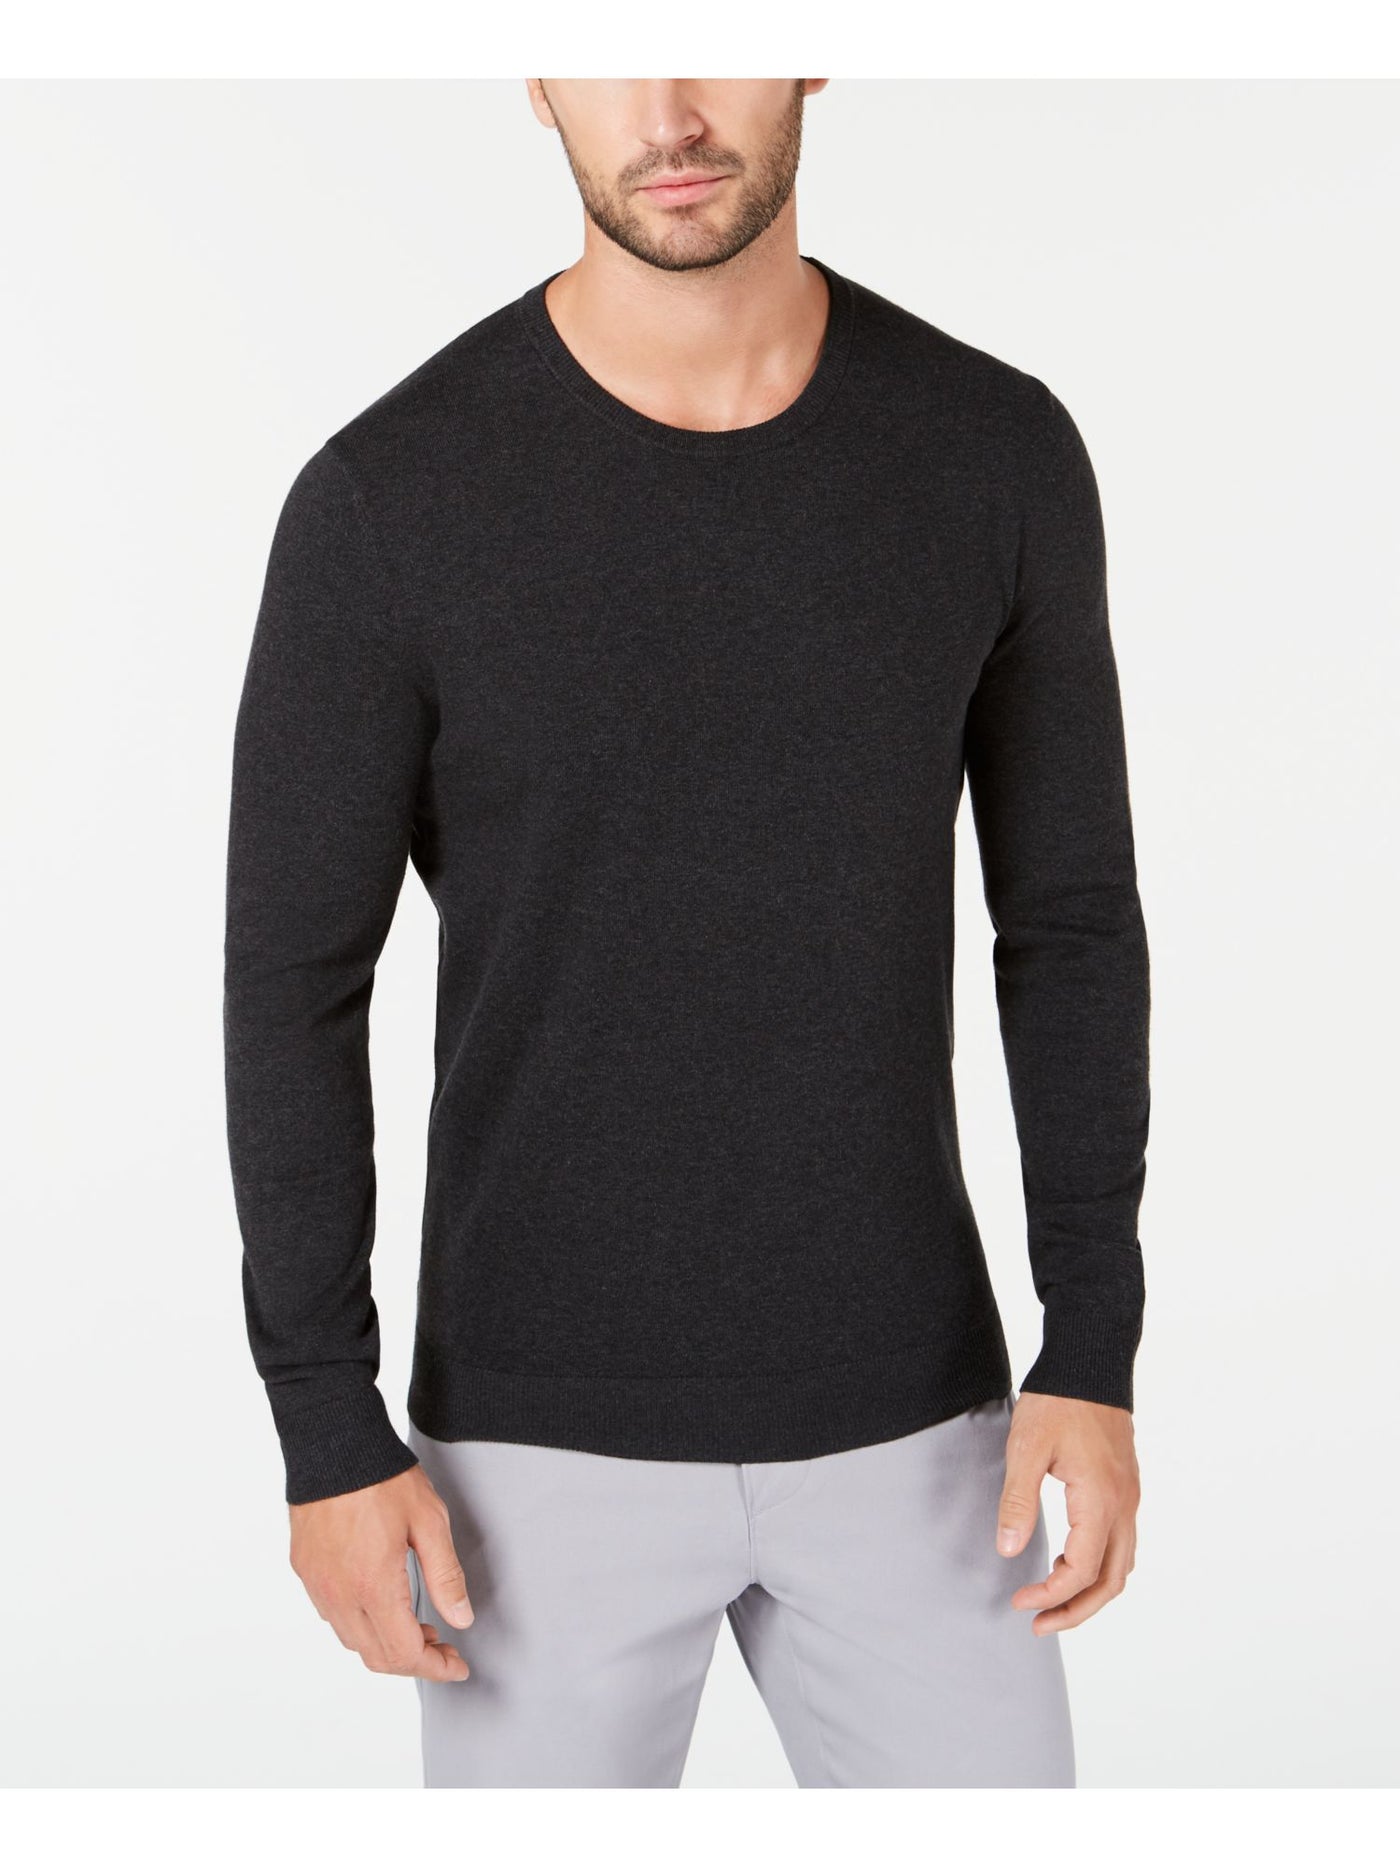 ALFANI Mens Gray Crew Neck Pullover Sweater XL